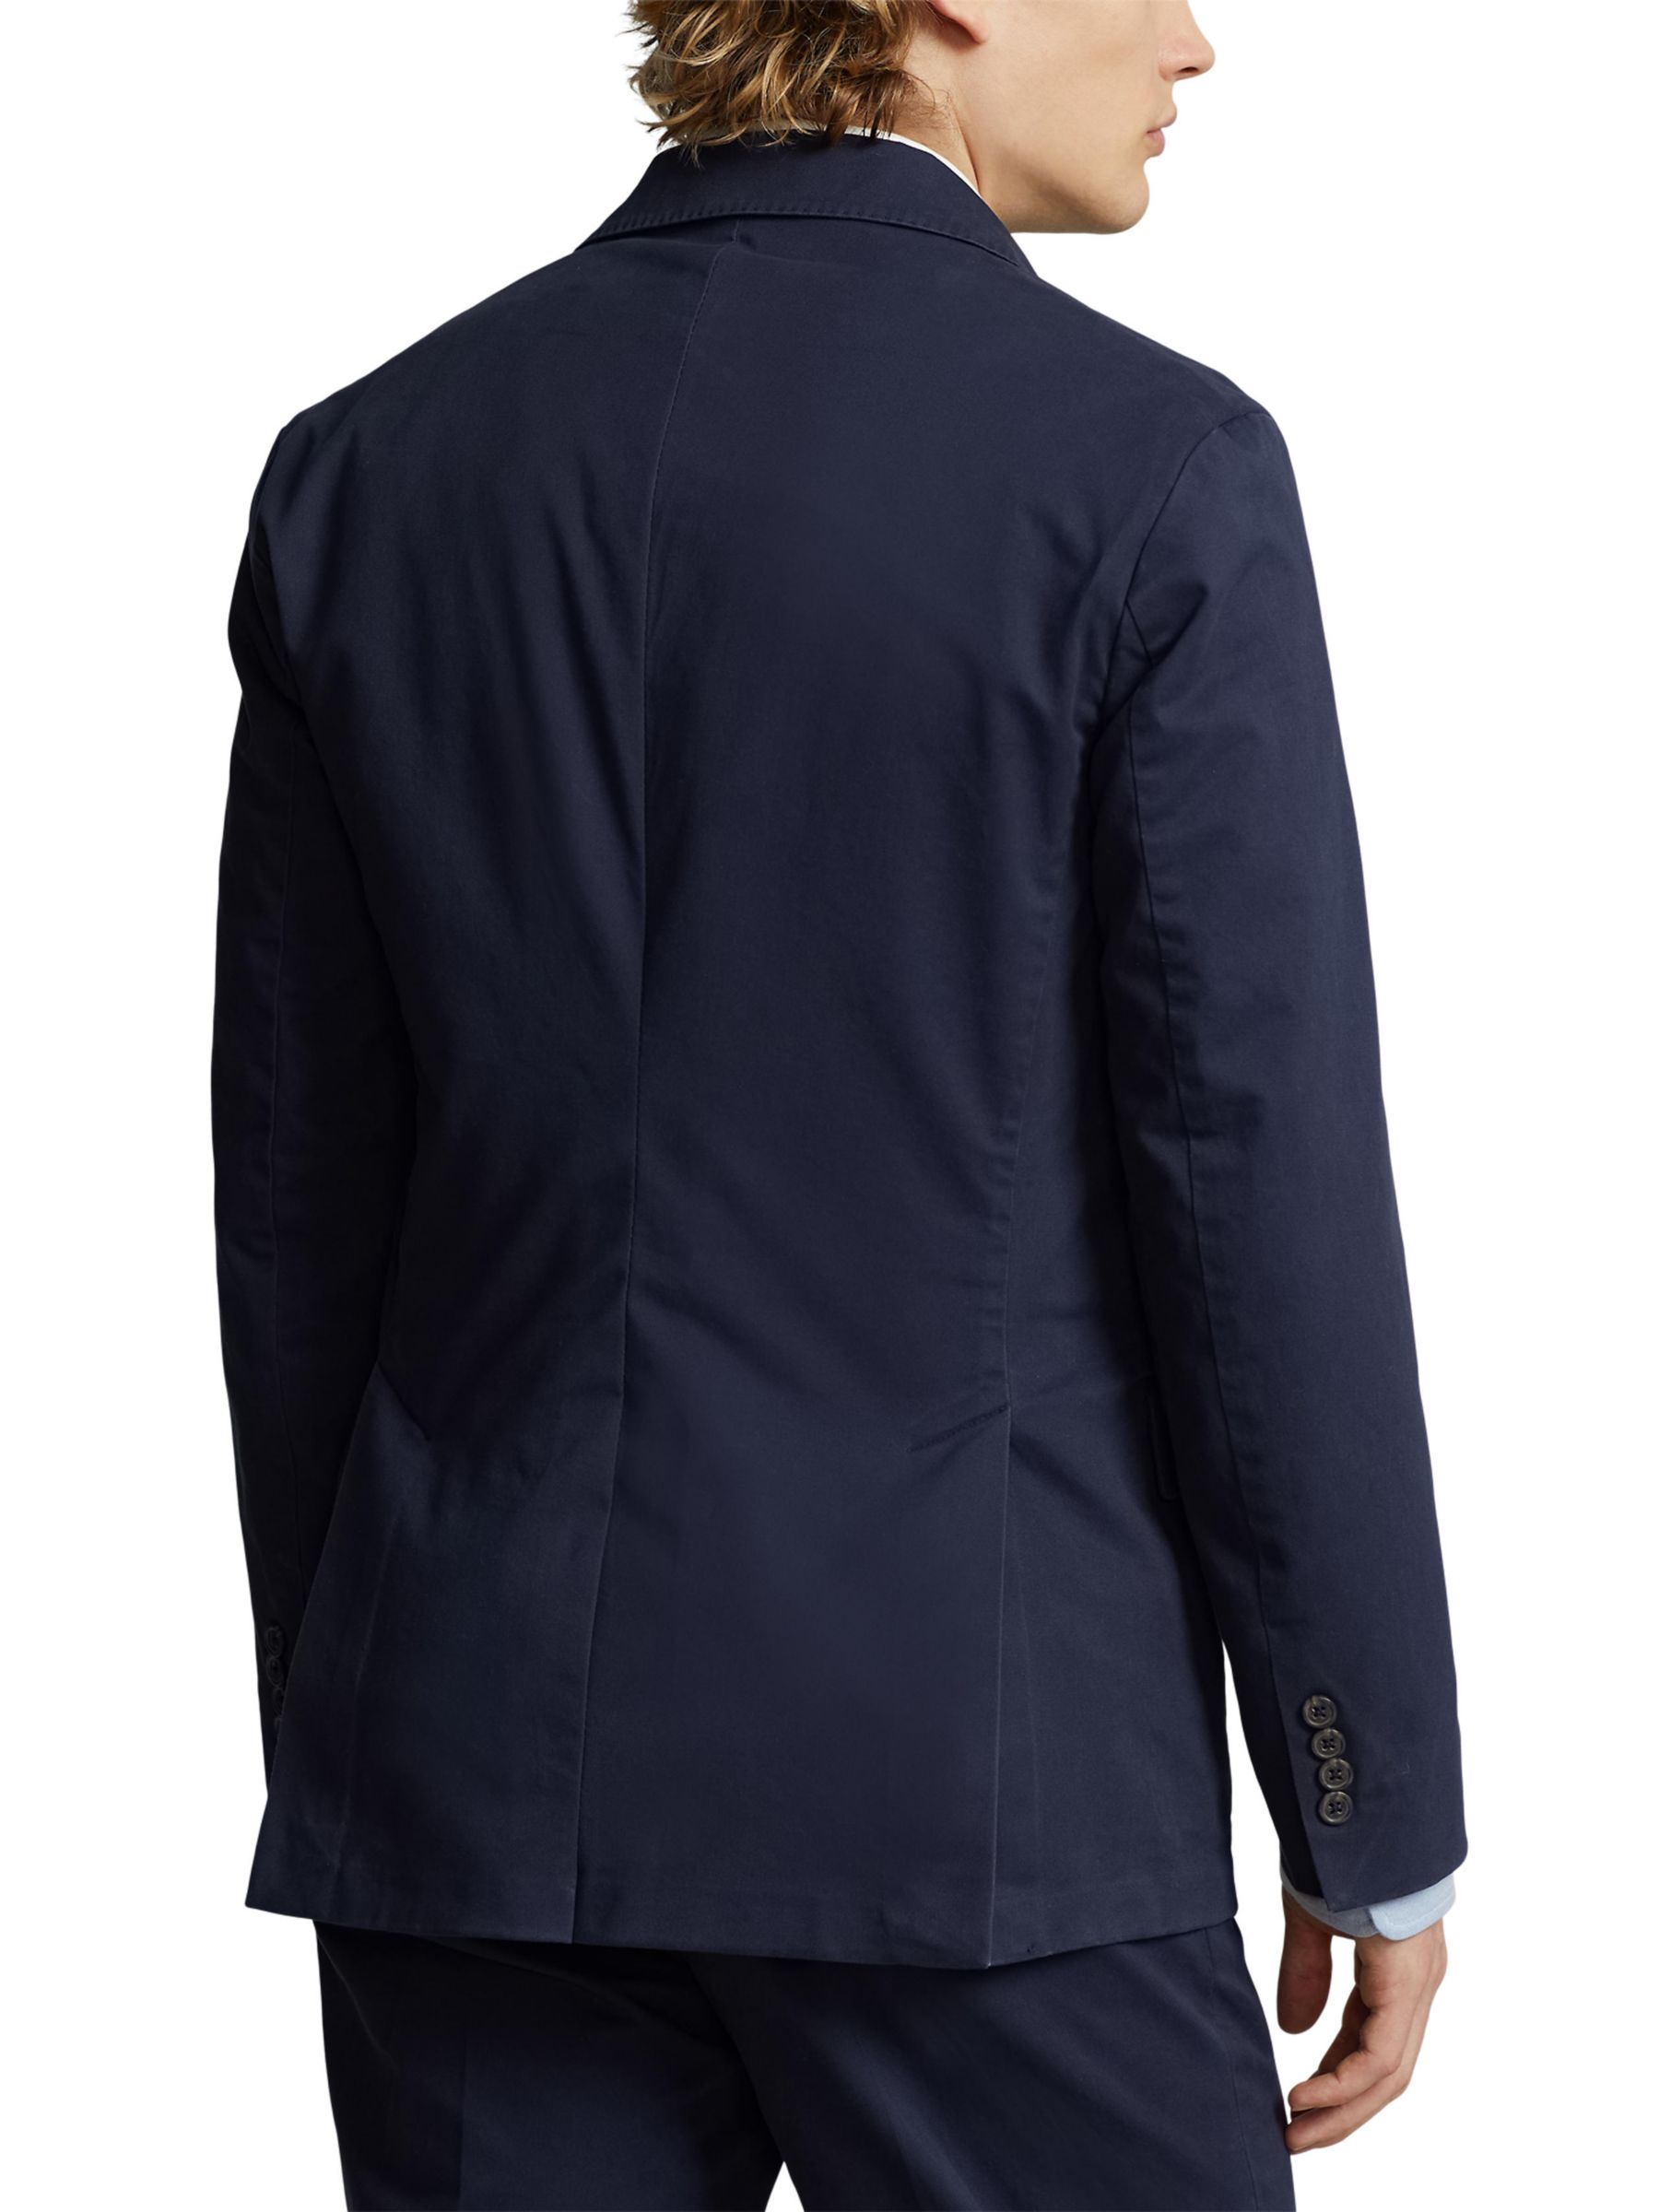 Polo Ralph Lauren Sport Coat Blazer, Navy, 44R